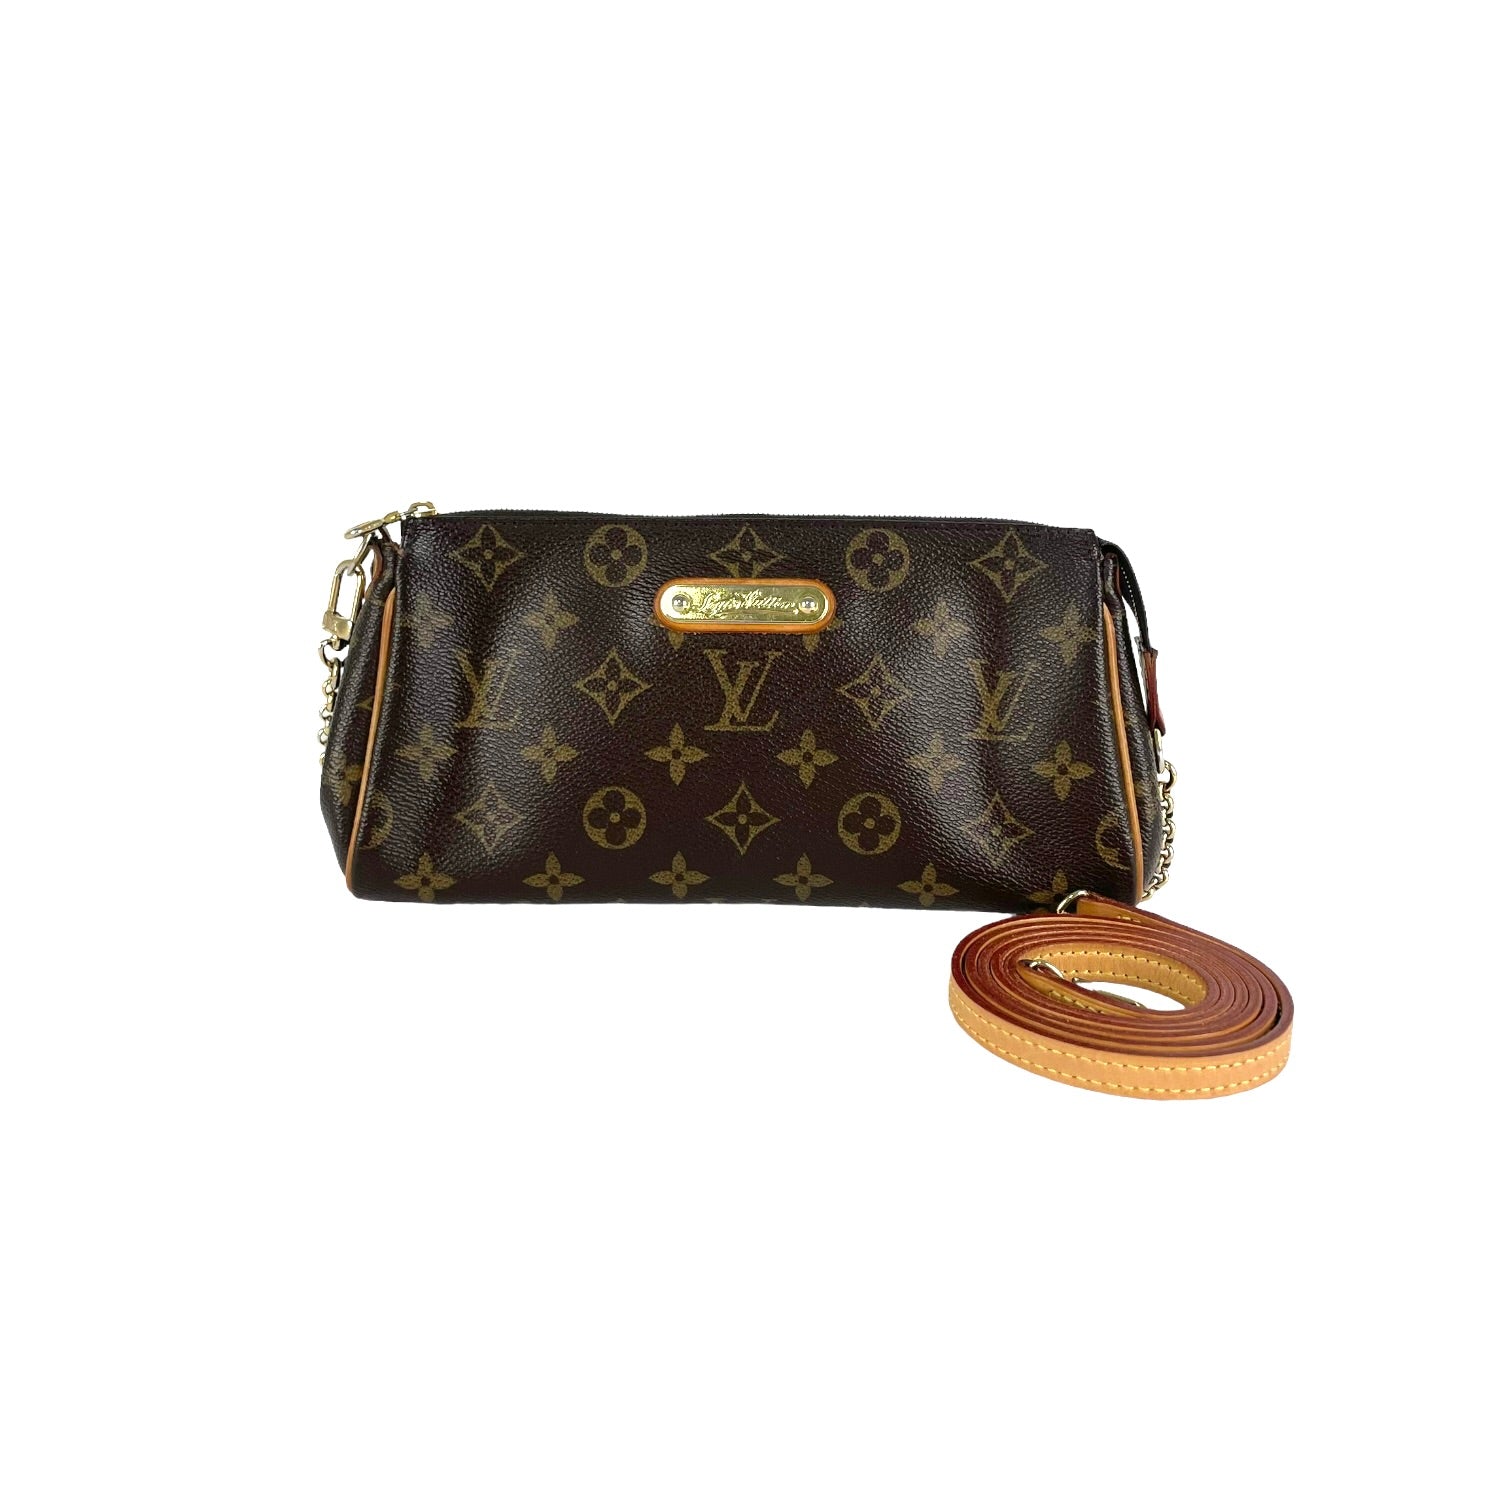 Louis Vuitton Handbags & Purses Louis Vuitton Eva, Authenticity Guaranteed